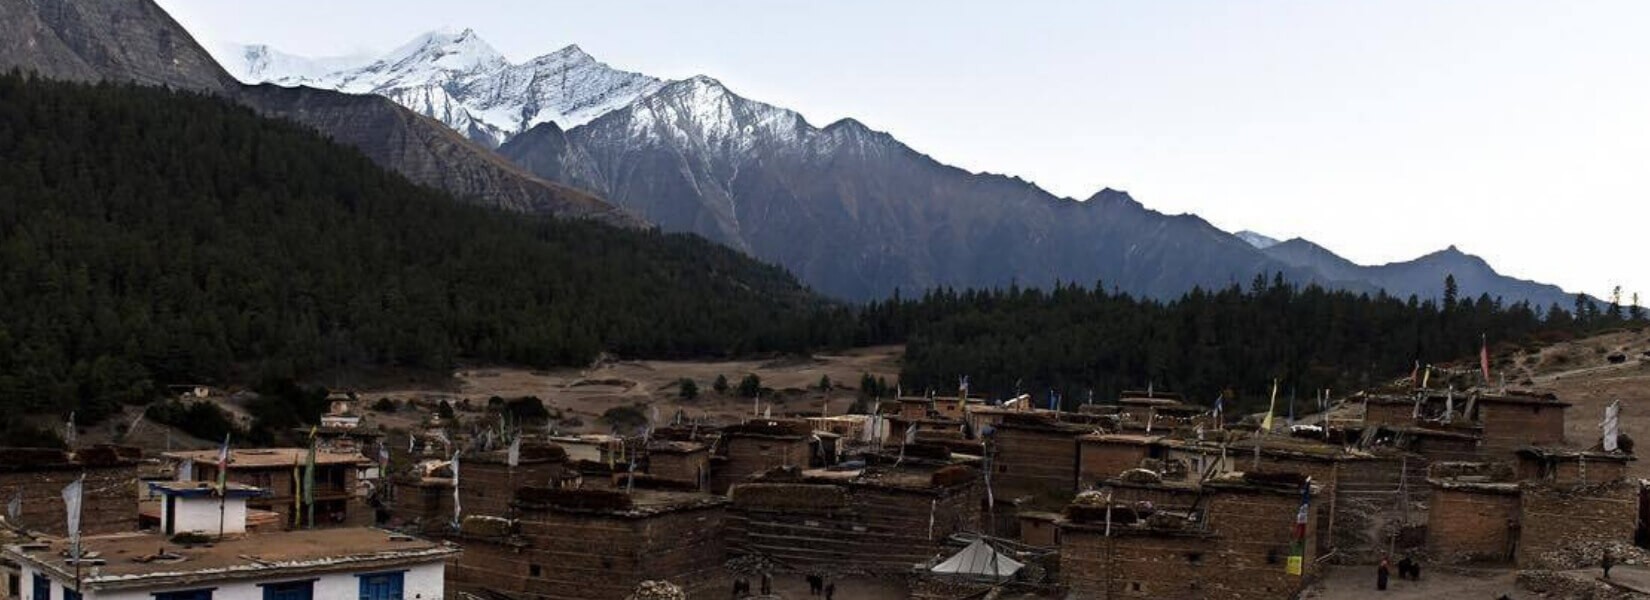 Restricted Region Trekking Wilderness Adventure unlimited in Nepal